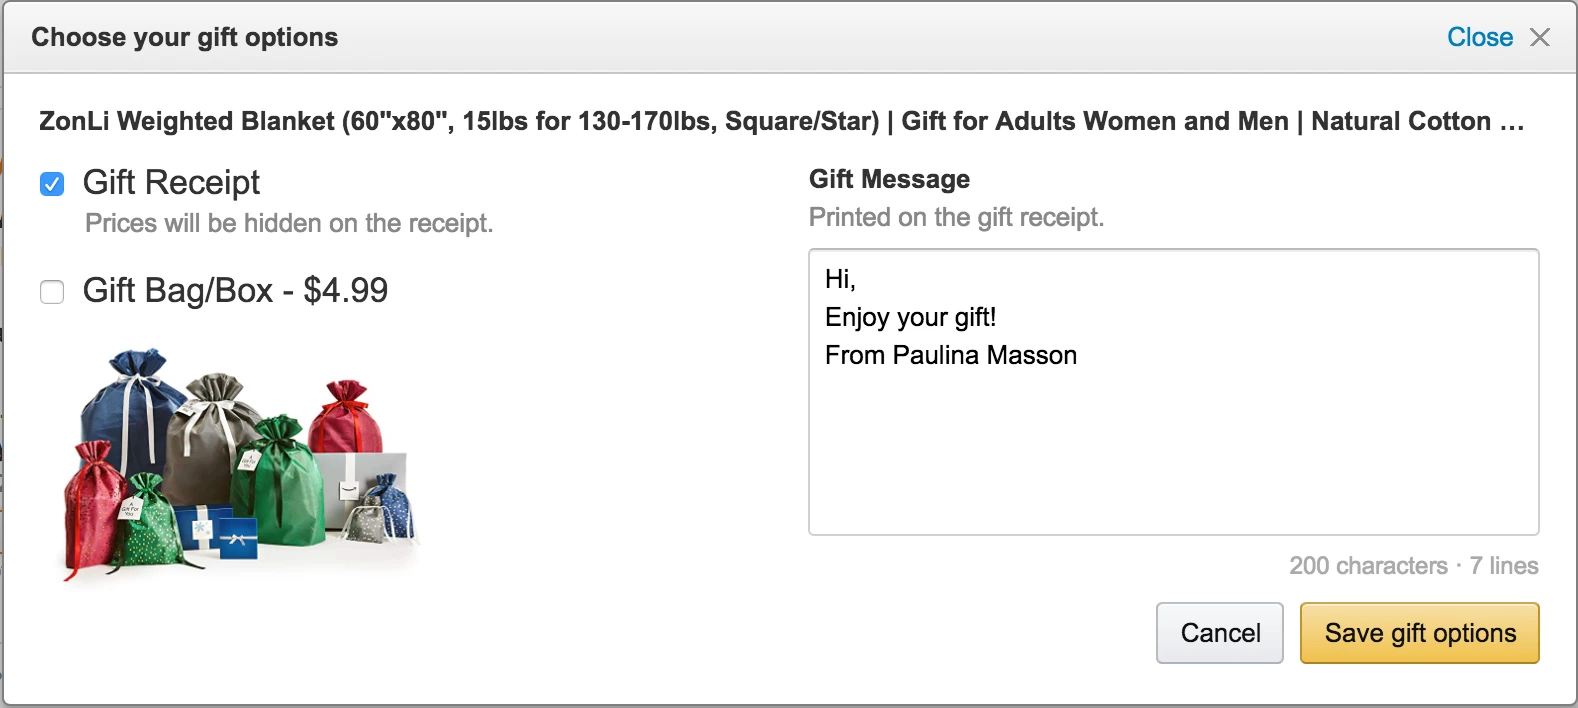 Choosing Gift Options on Amazon